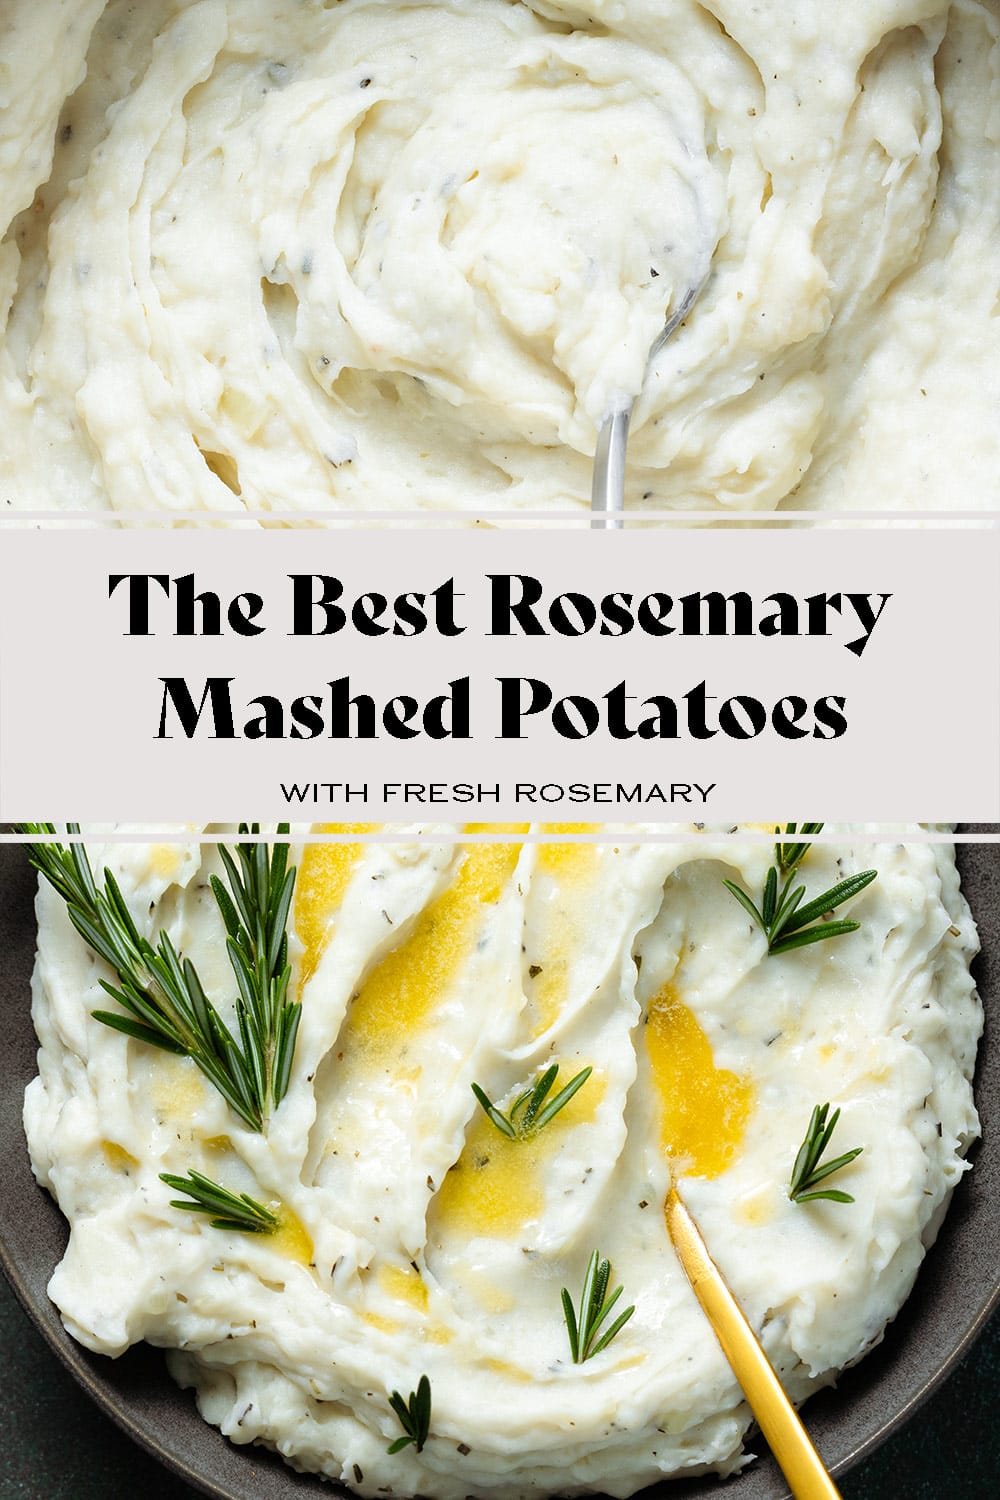 Rosemary Mashed Potatoes